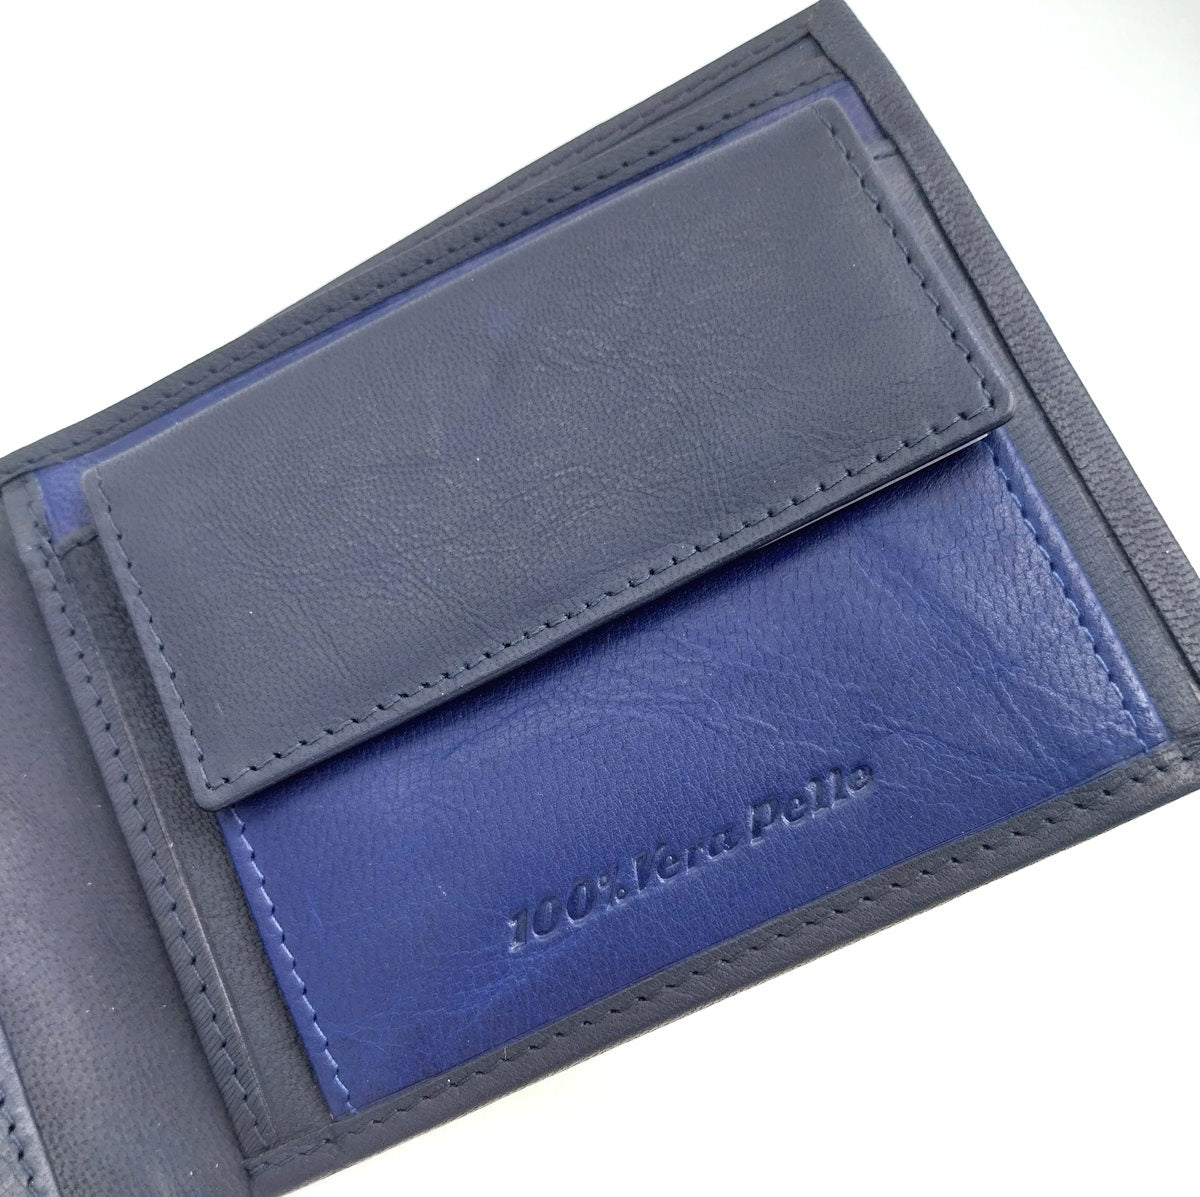 Genuine leather wallet, Wampum, art. pdk399-1